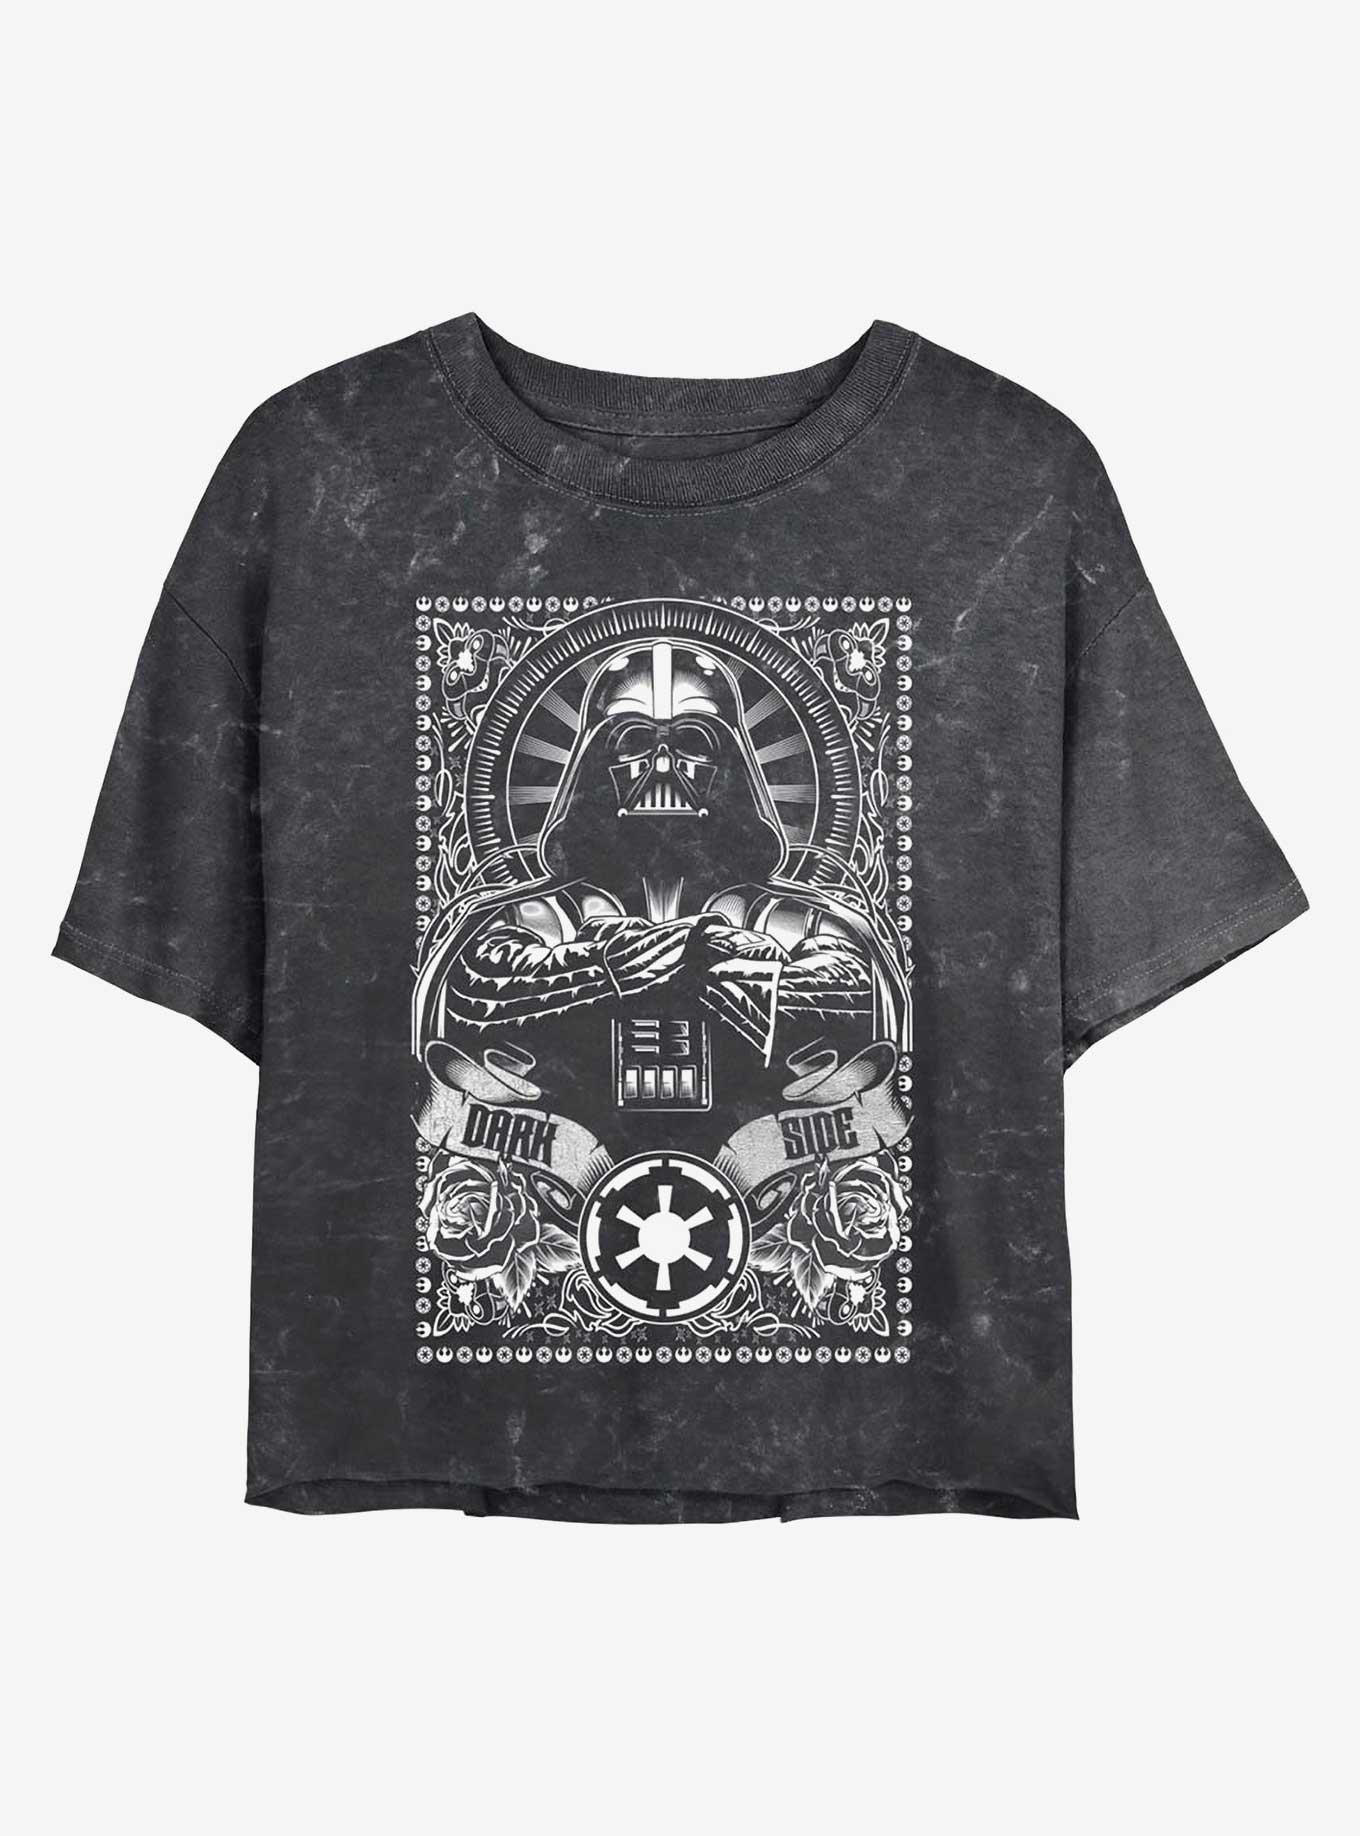 Star Wars Vader Dark Side Mineral Wash Girls Crop T-Shirt, BLACK, hi-res